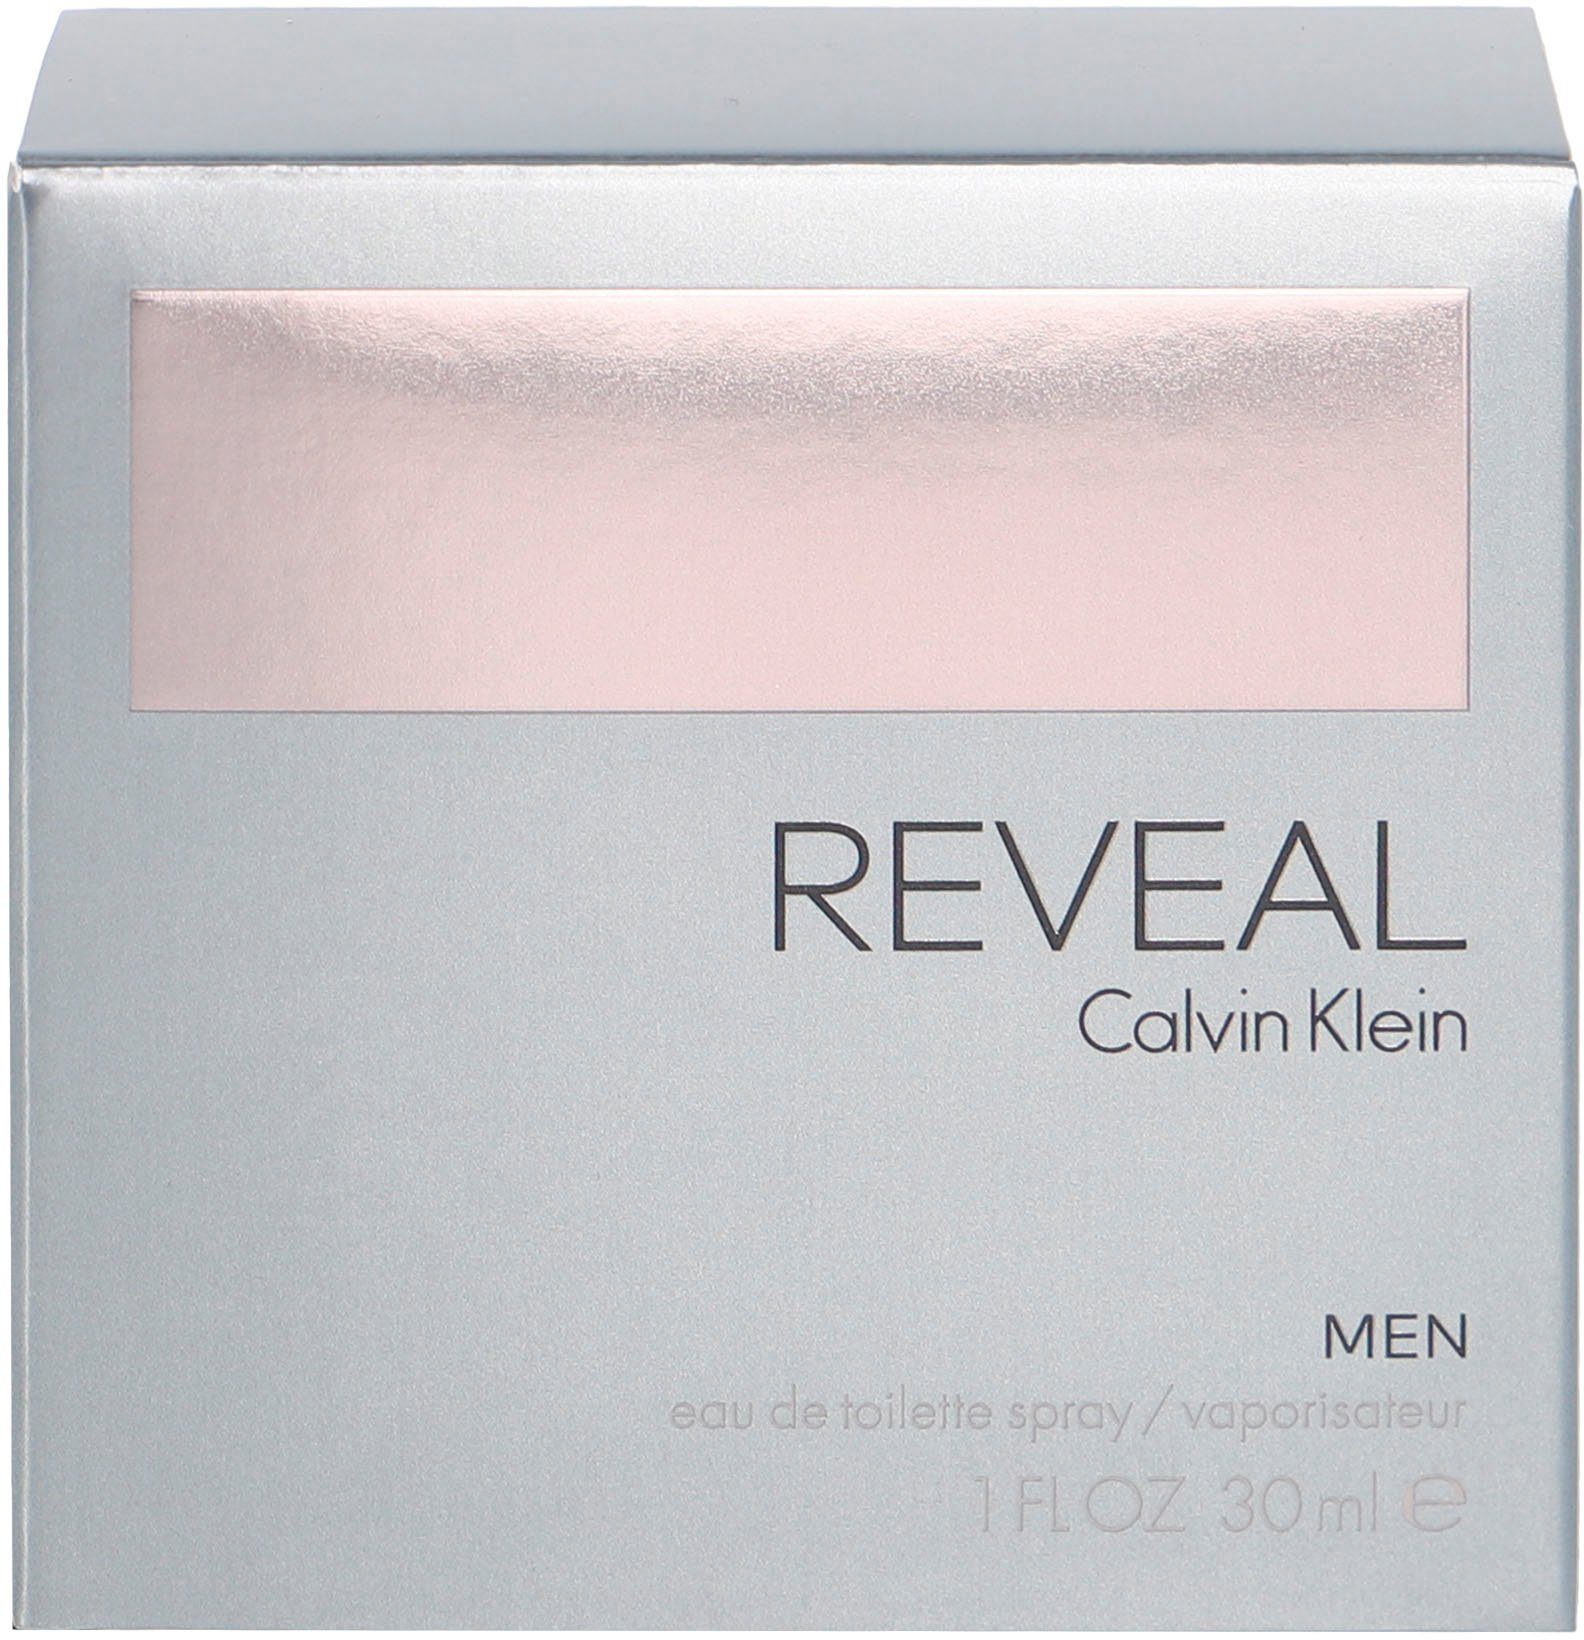 Calvin Klein Toilette de Reveal Men Eau